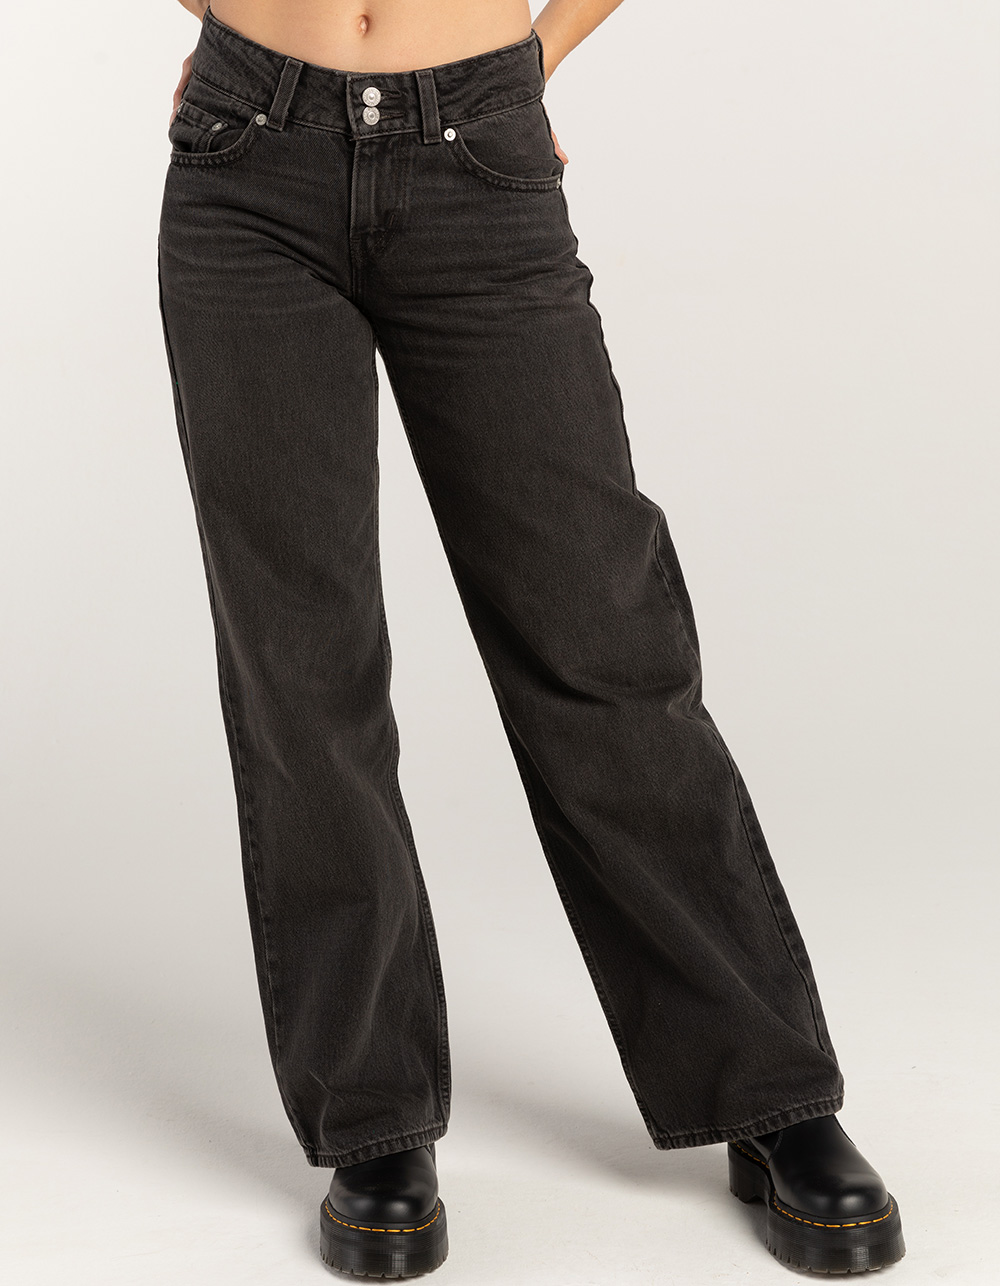 Low Loose Women's Jeans - Black